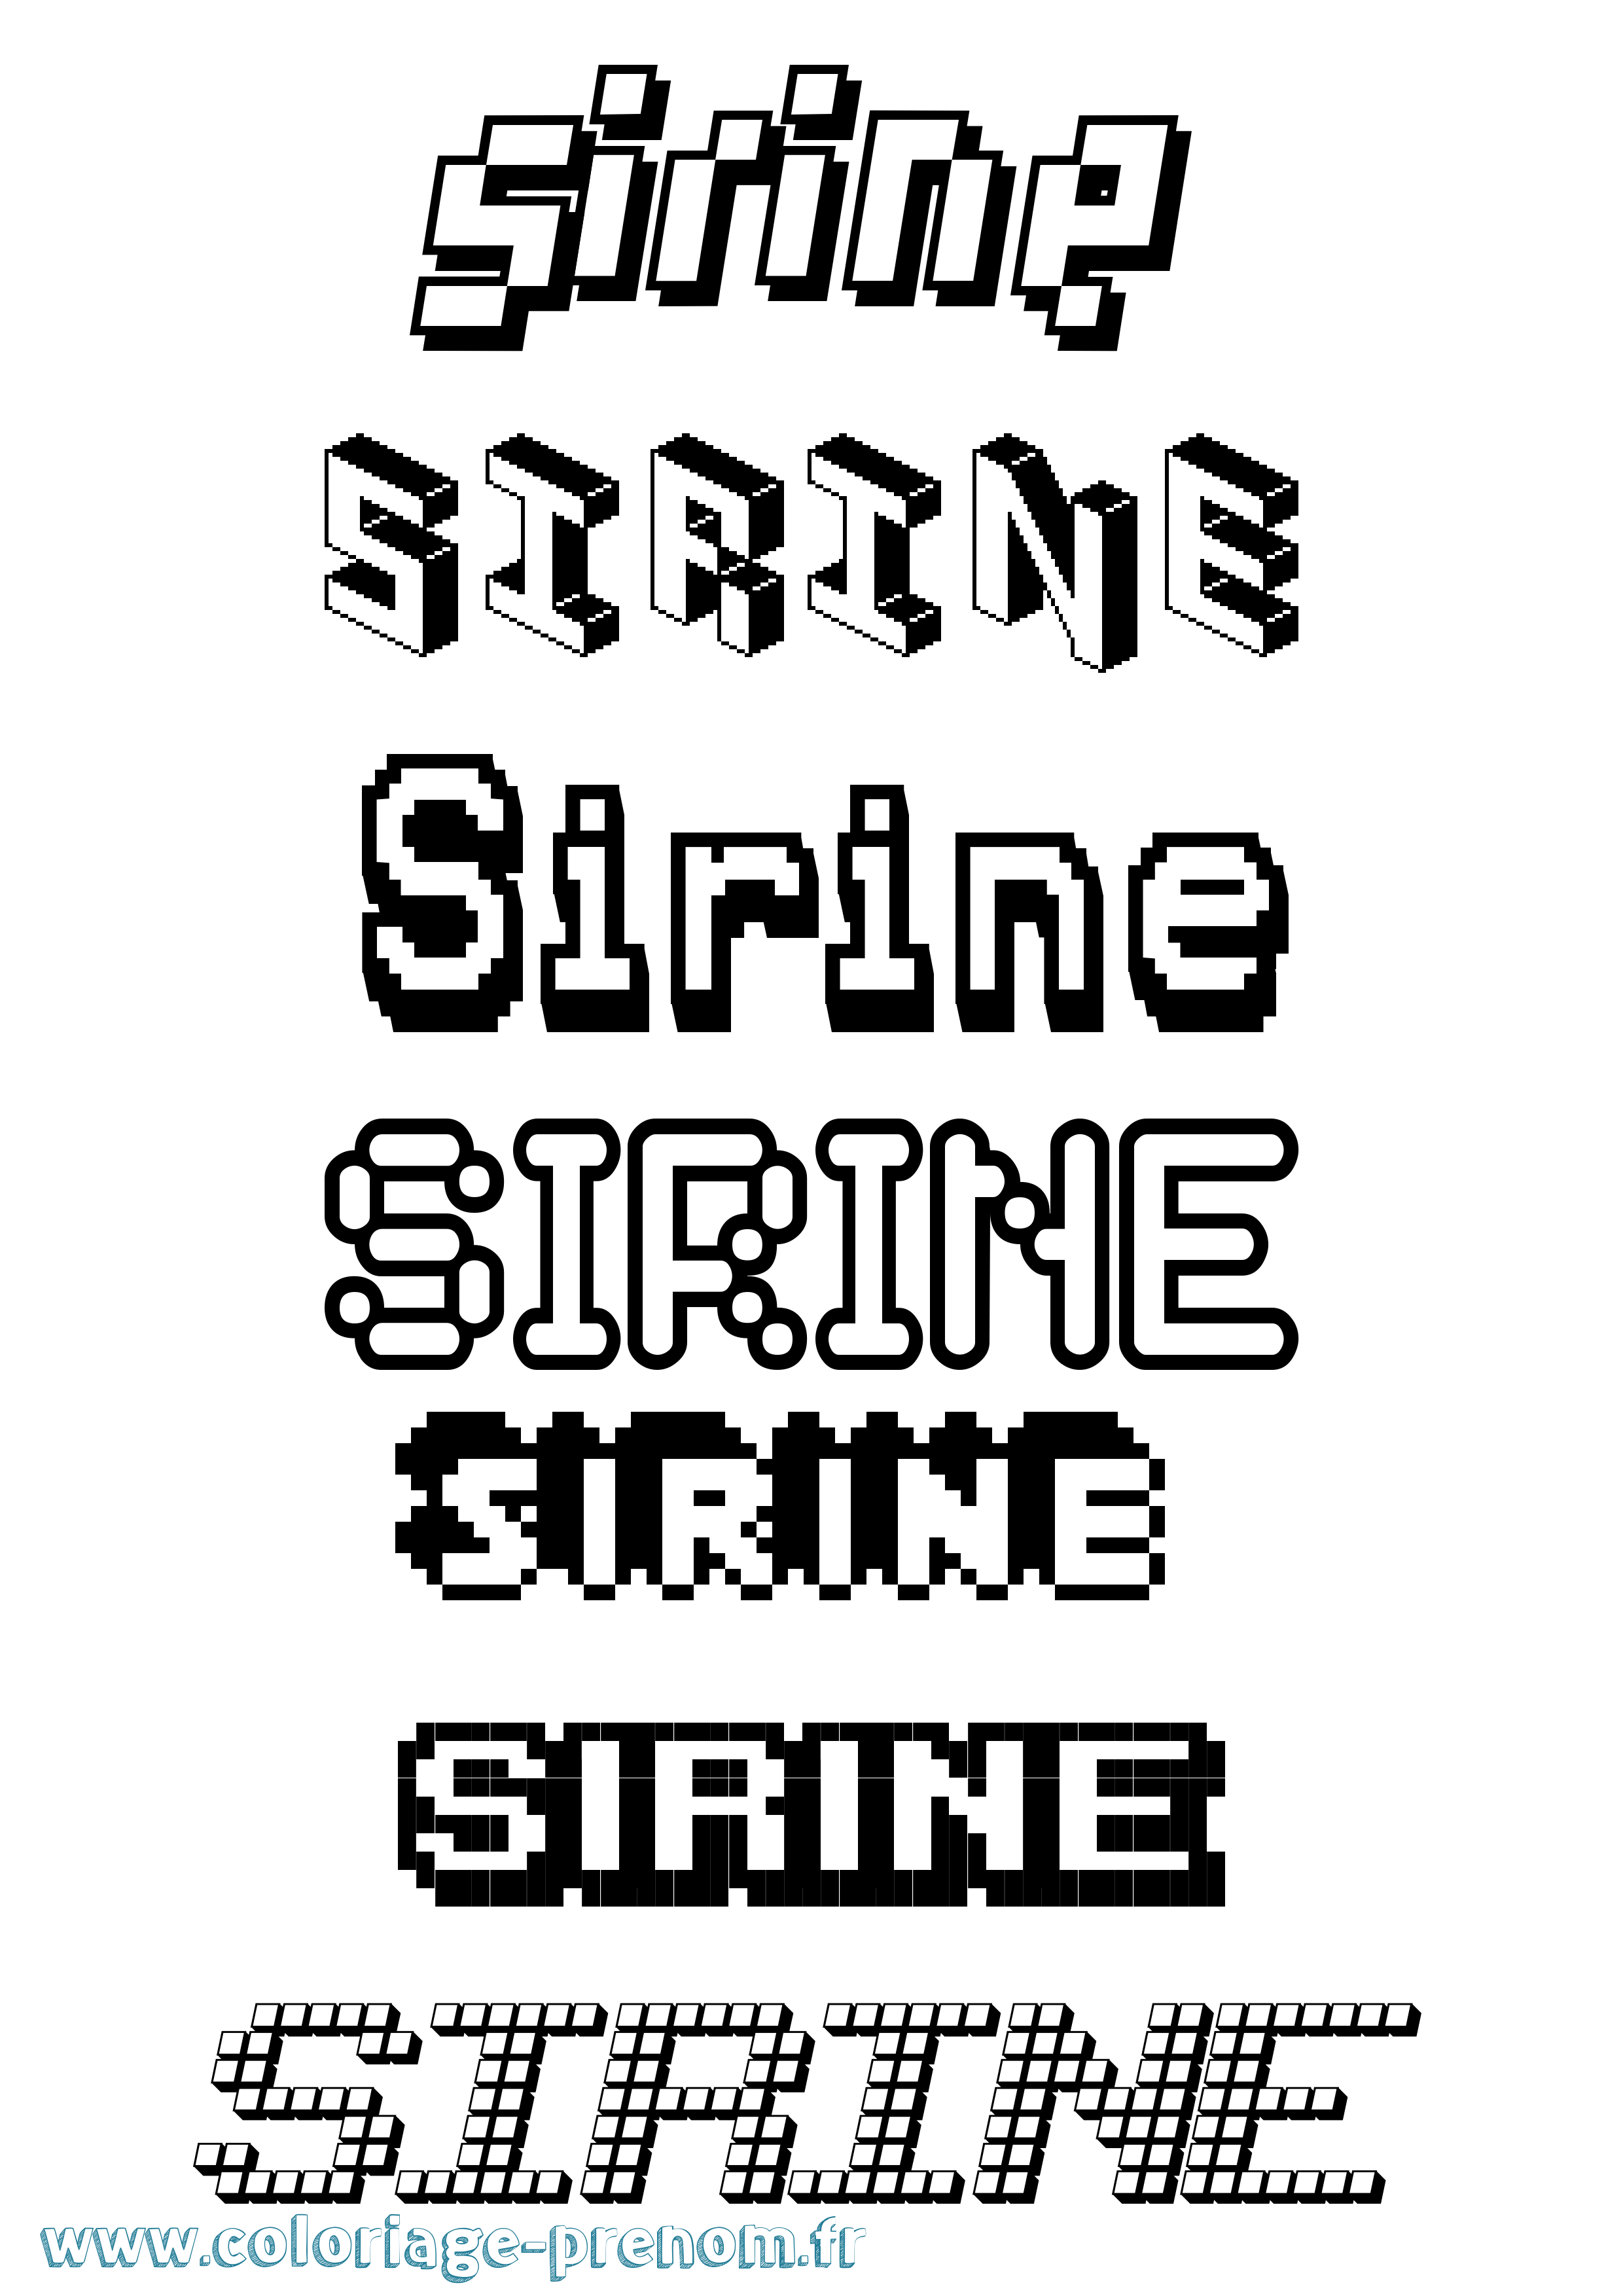 Coloriage prénom Sirine